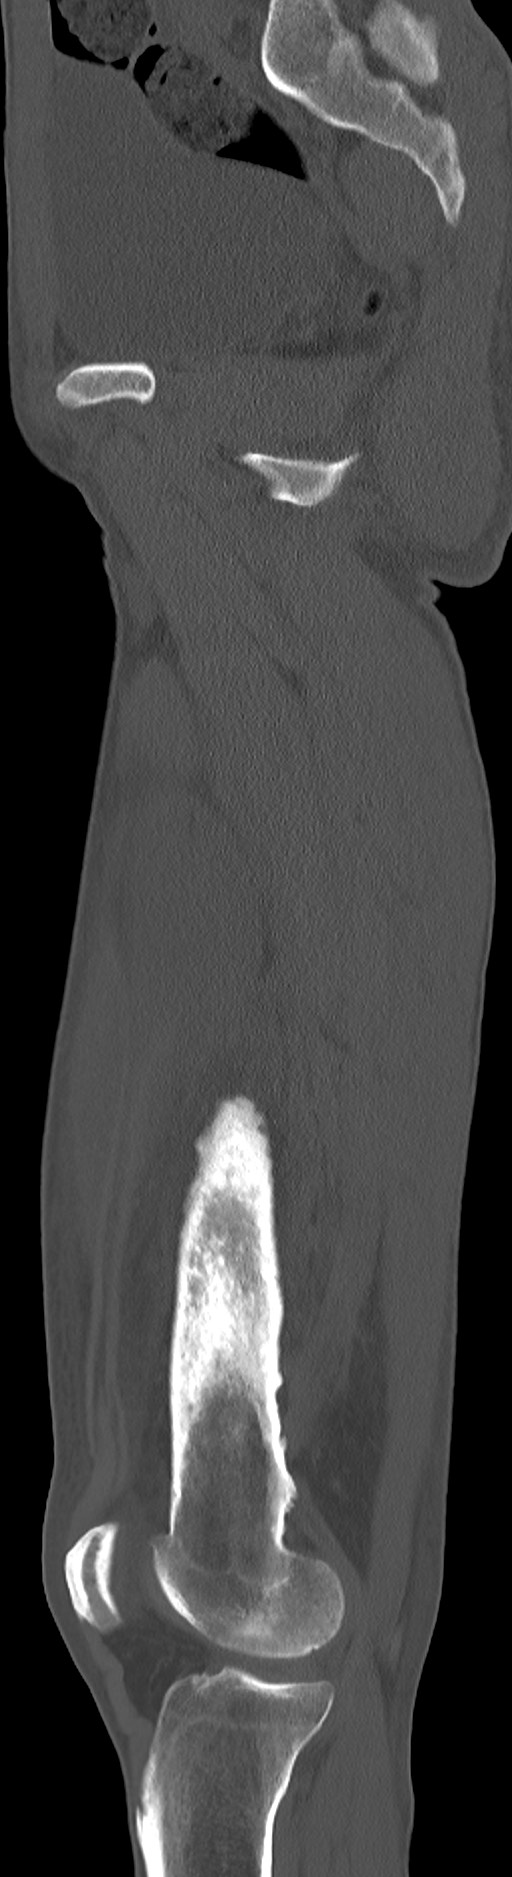 Chronic osteomyelitis (with sequestrum) (Radiopaedia 74813-85822 C 68).jpg